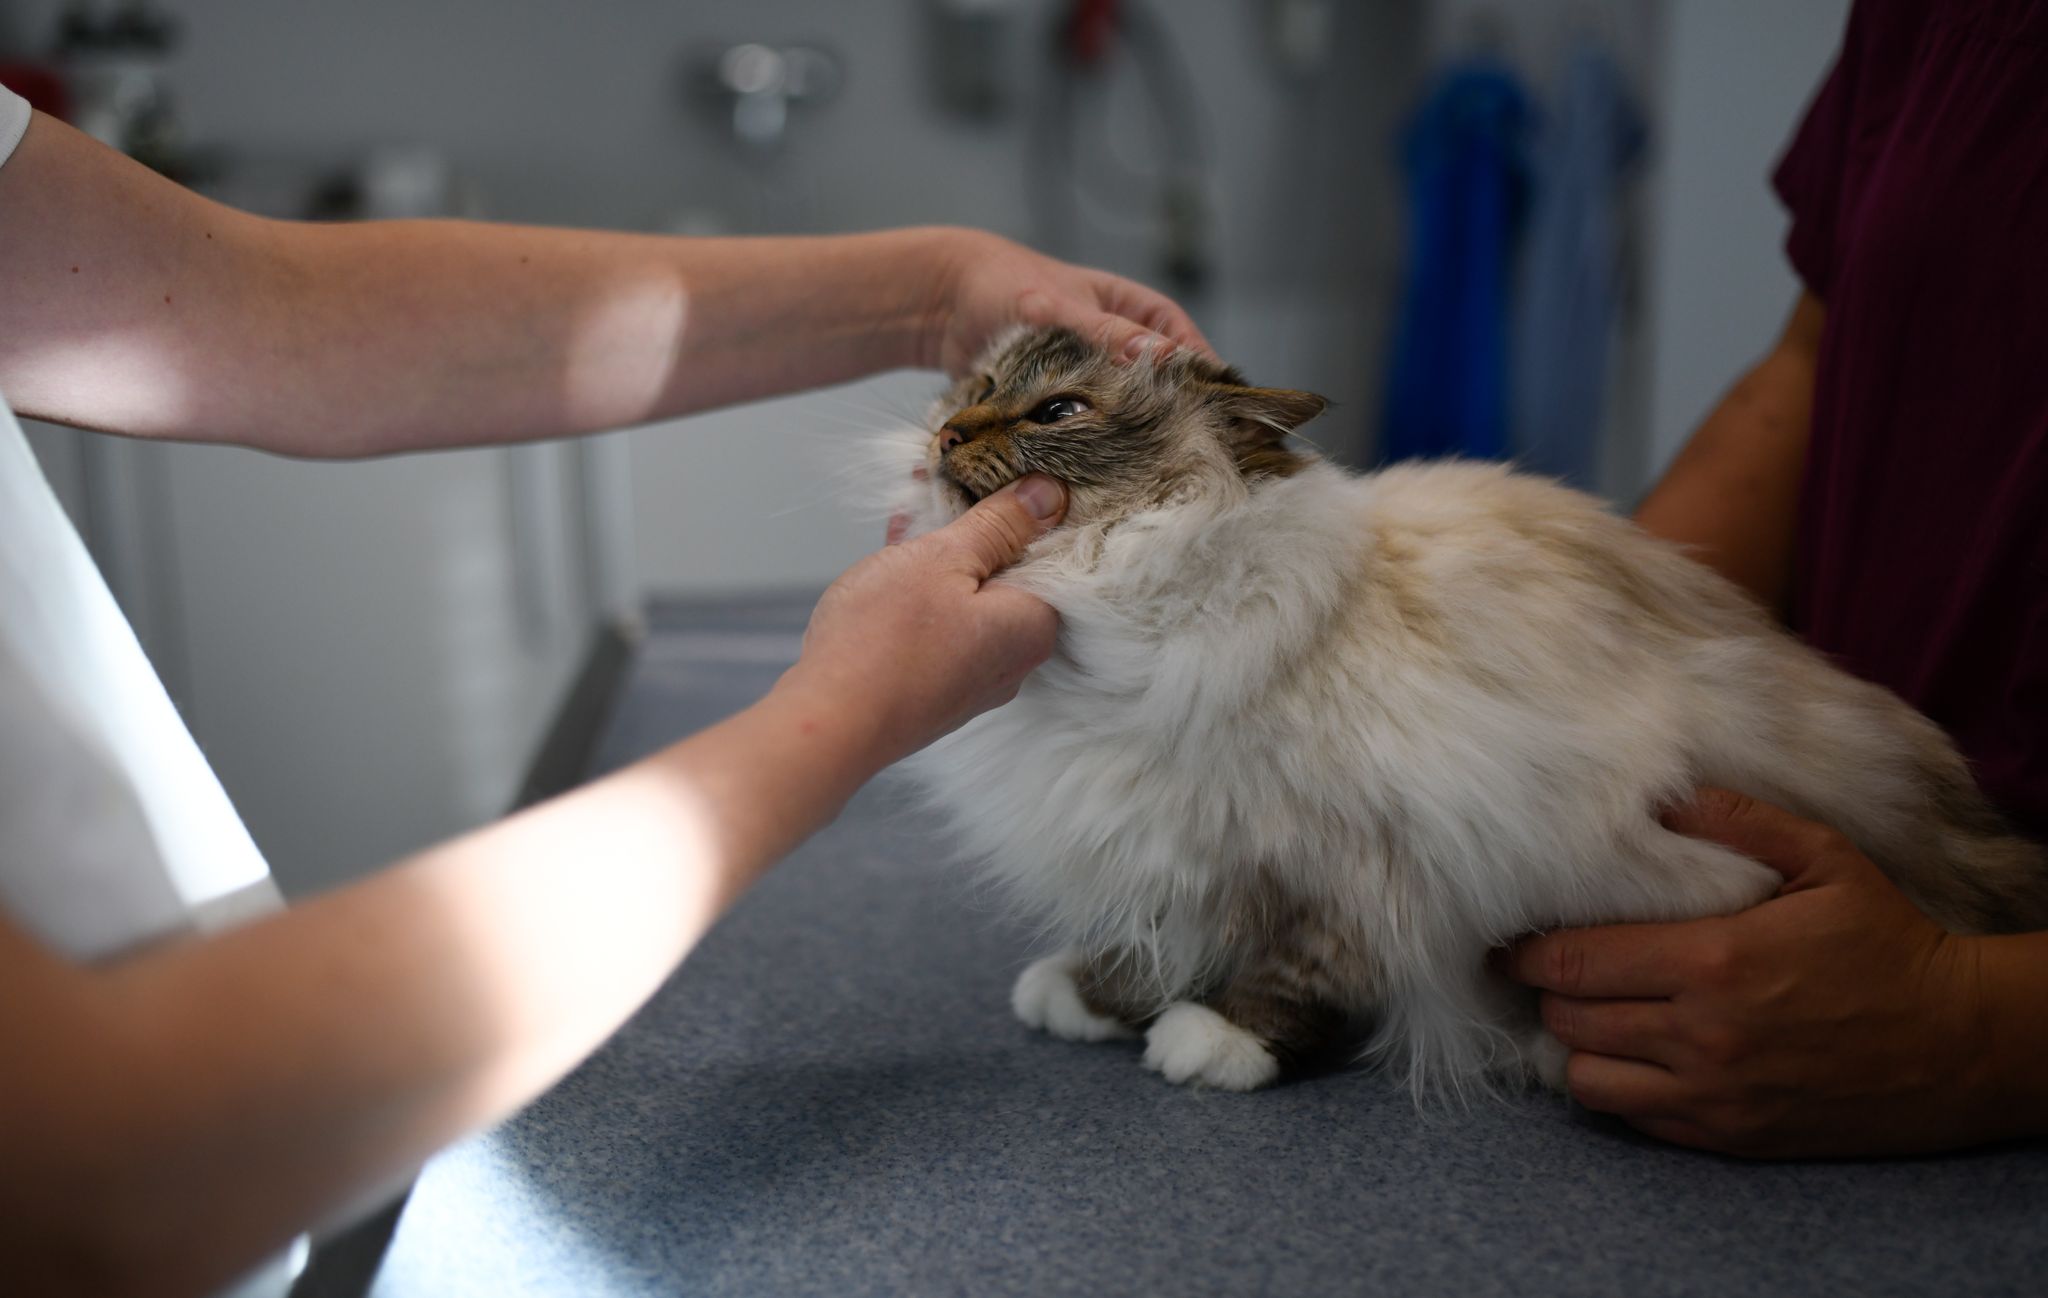 "Ahora los veterinarios pueden prescribir medicamentos obviamente para que utilicen las mascotas y los pacientes pueden ir con una receta firmada por un veterinario a que los dispensemos nosotros en la farmacias", dijeron desde COFA Foto: Ina Fassbender/dpa